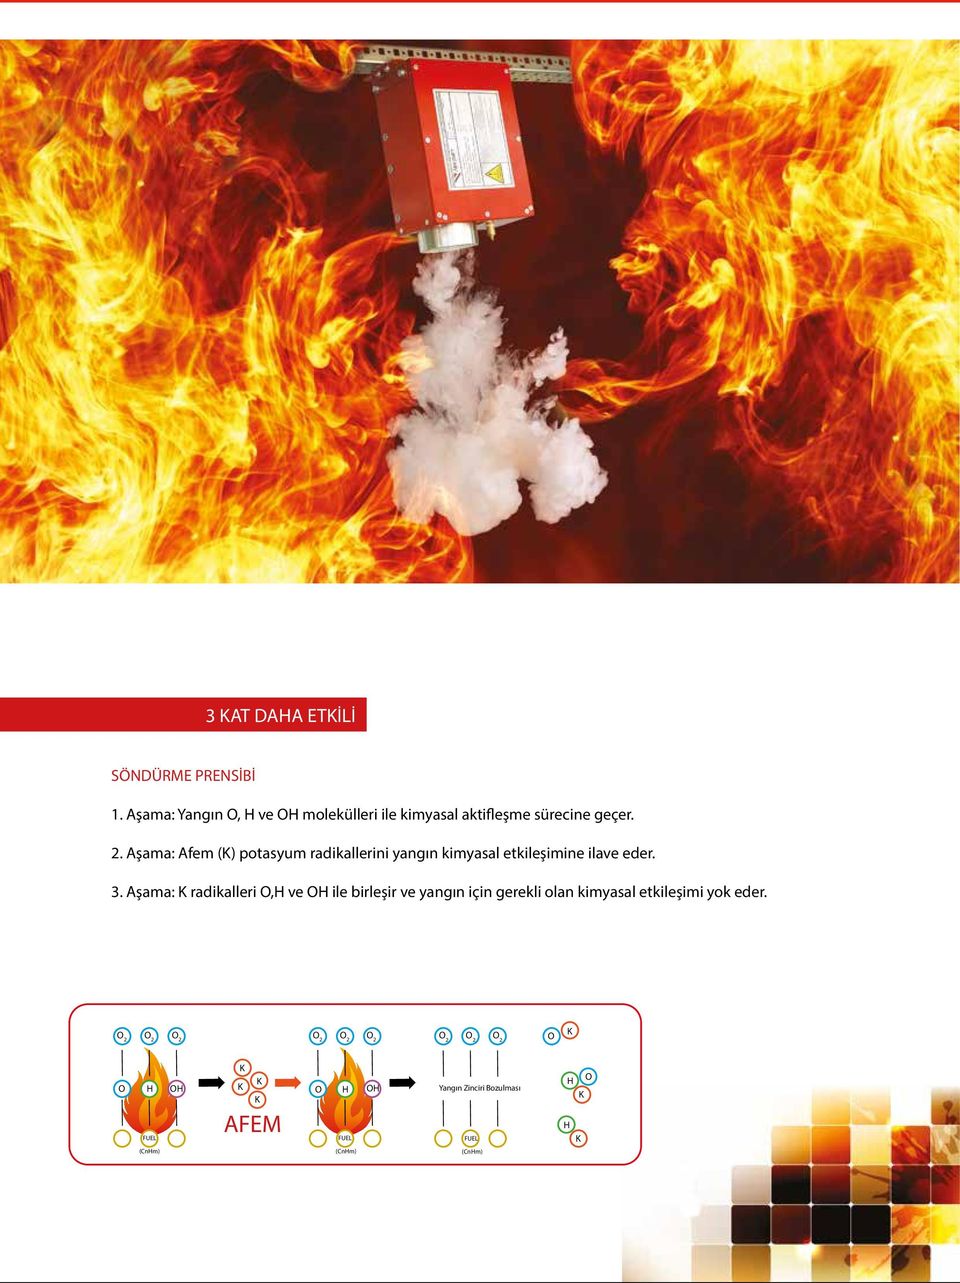 Aşama: Afem (K) potasyum radikallerini yangın kimyasal etkileşimine ilave eder. 3.